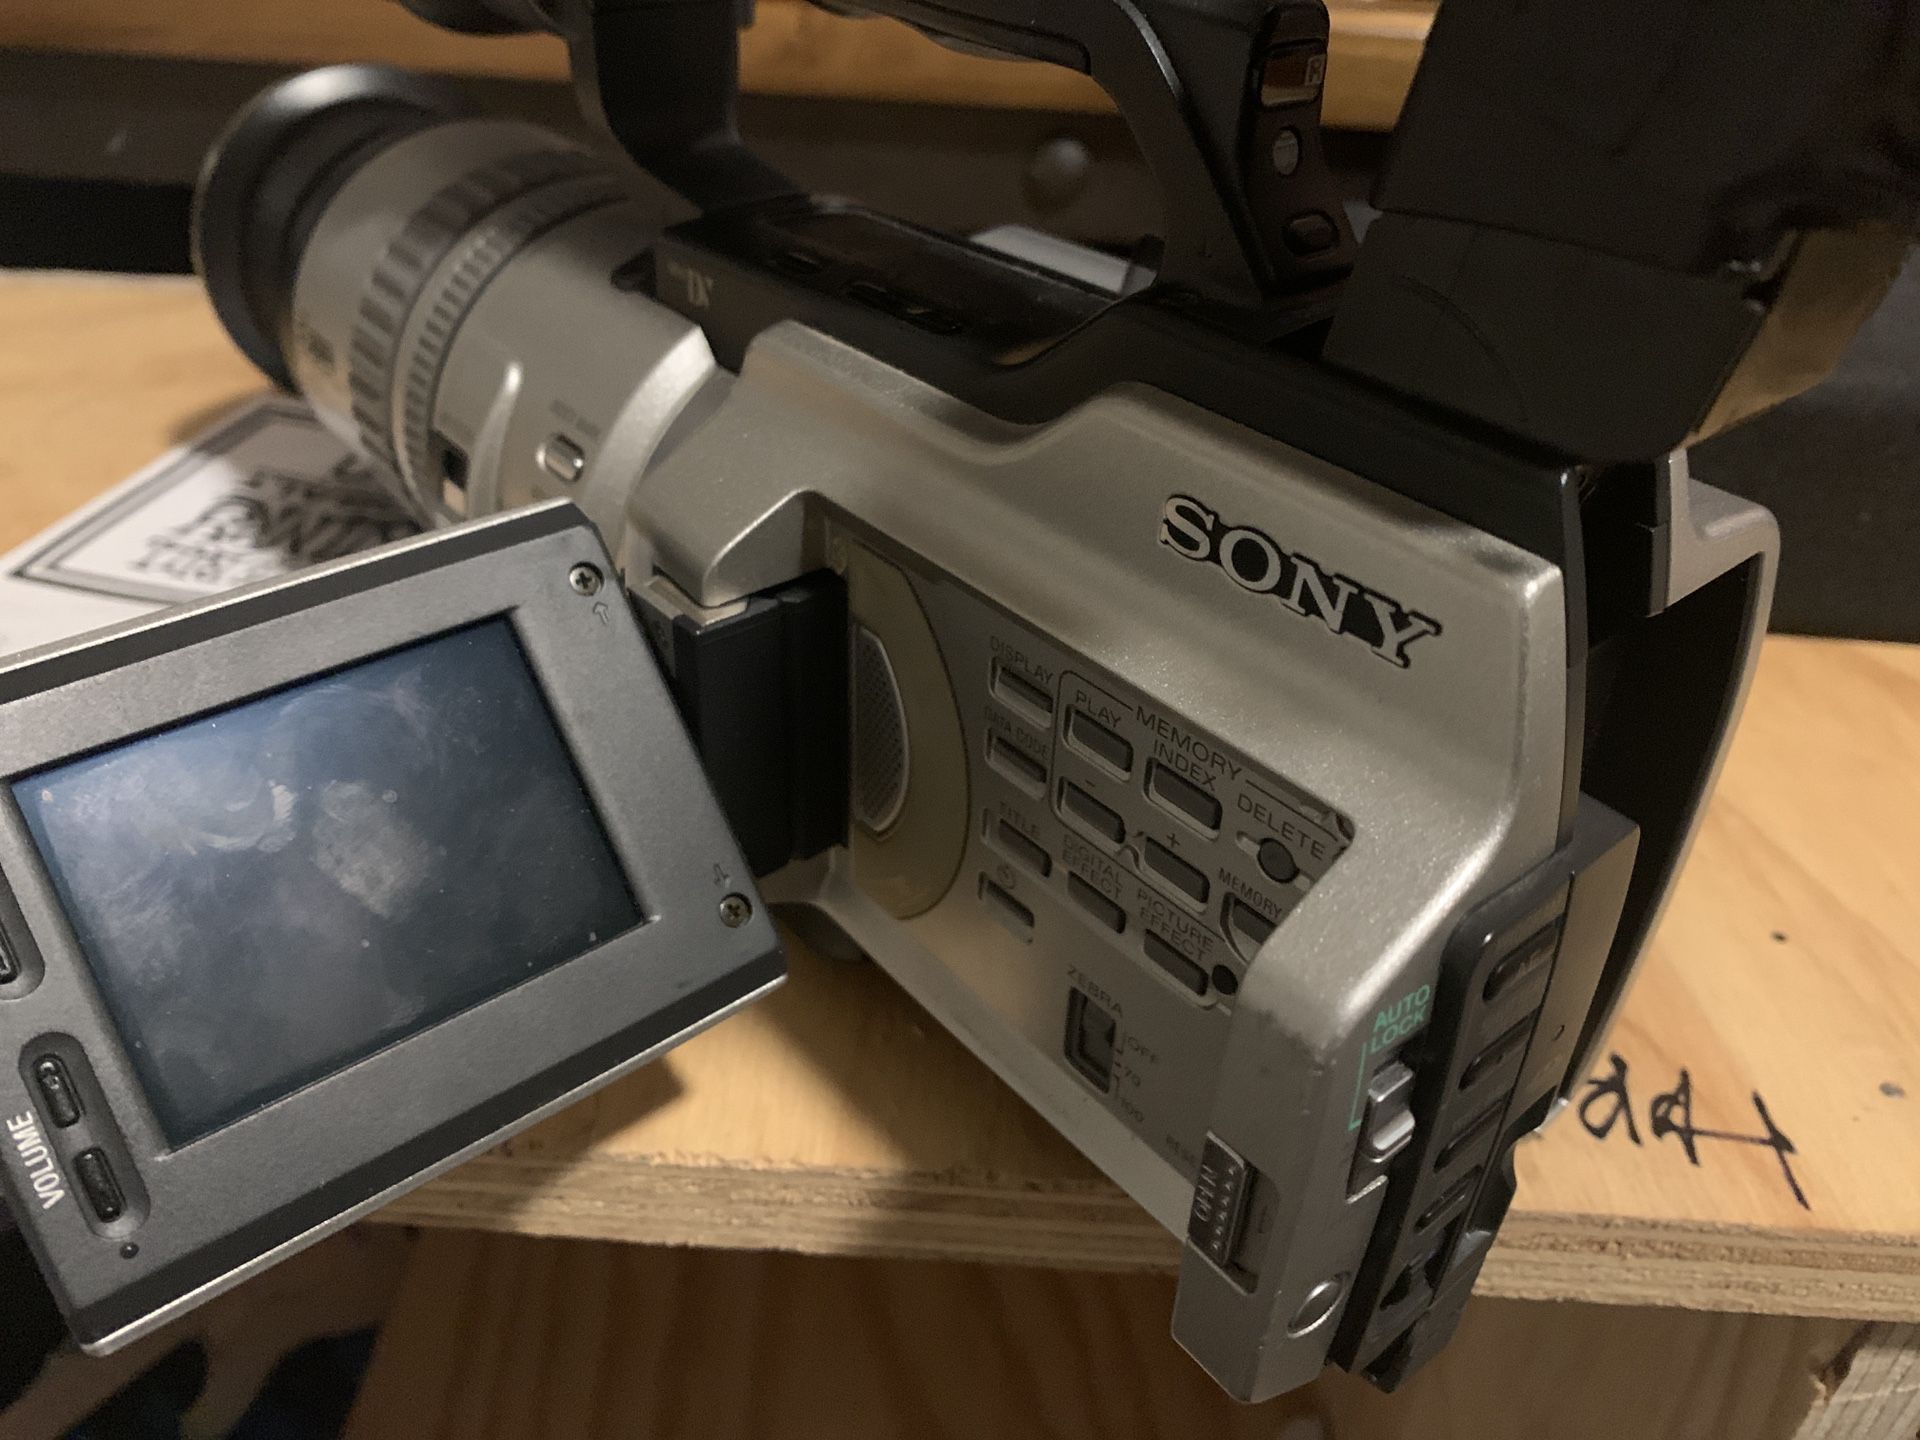 Sony VX2000 skate cam